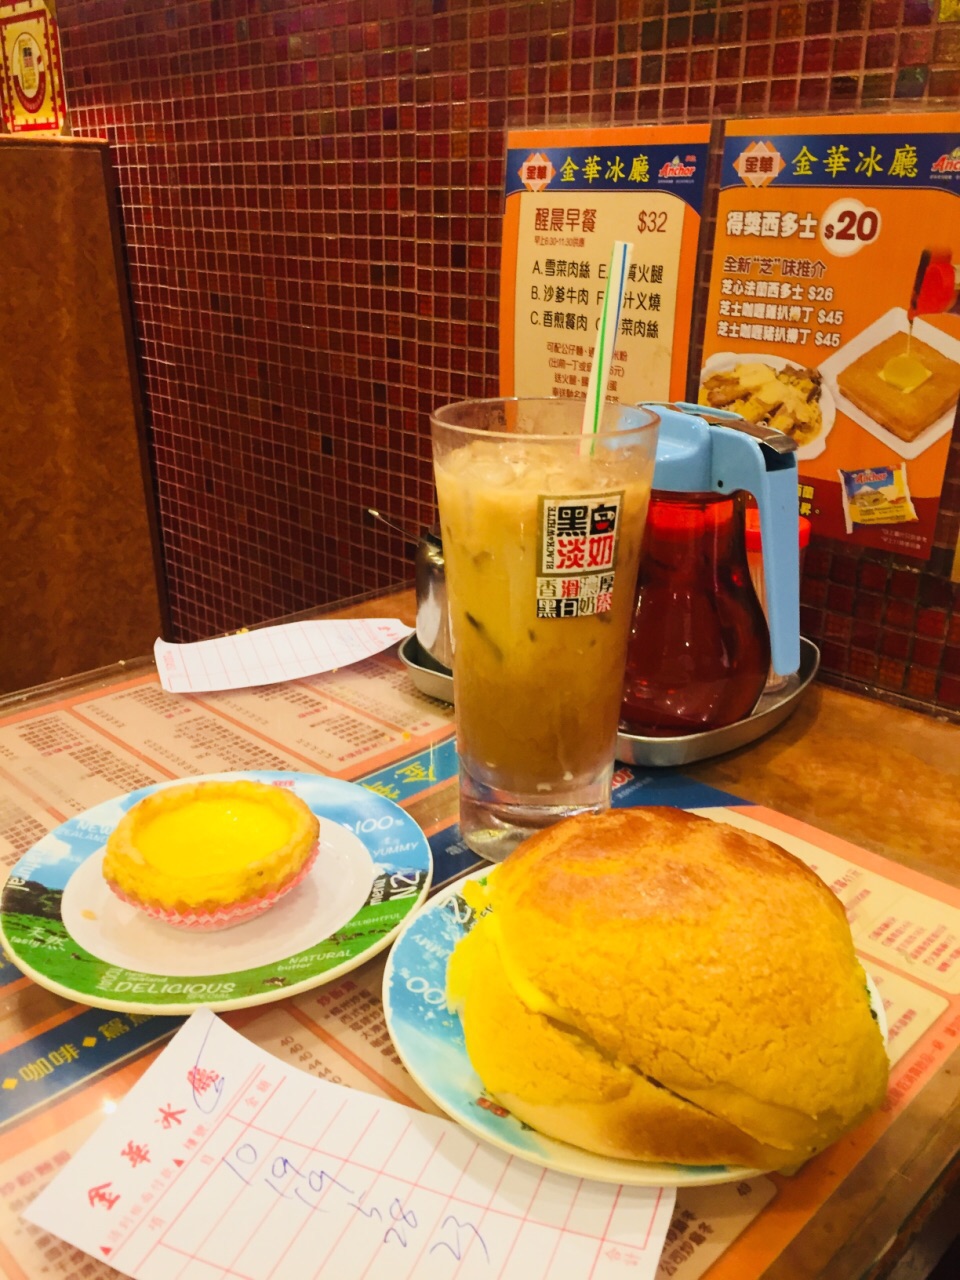 金华冰厅 金华冰厅的菠萝包号称全港第一，专门去找着吃，金华冰室是香港的老字号了，所以环境相对普通，但